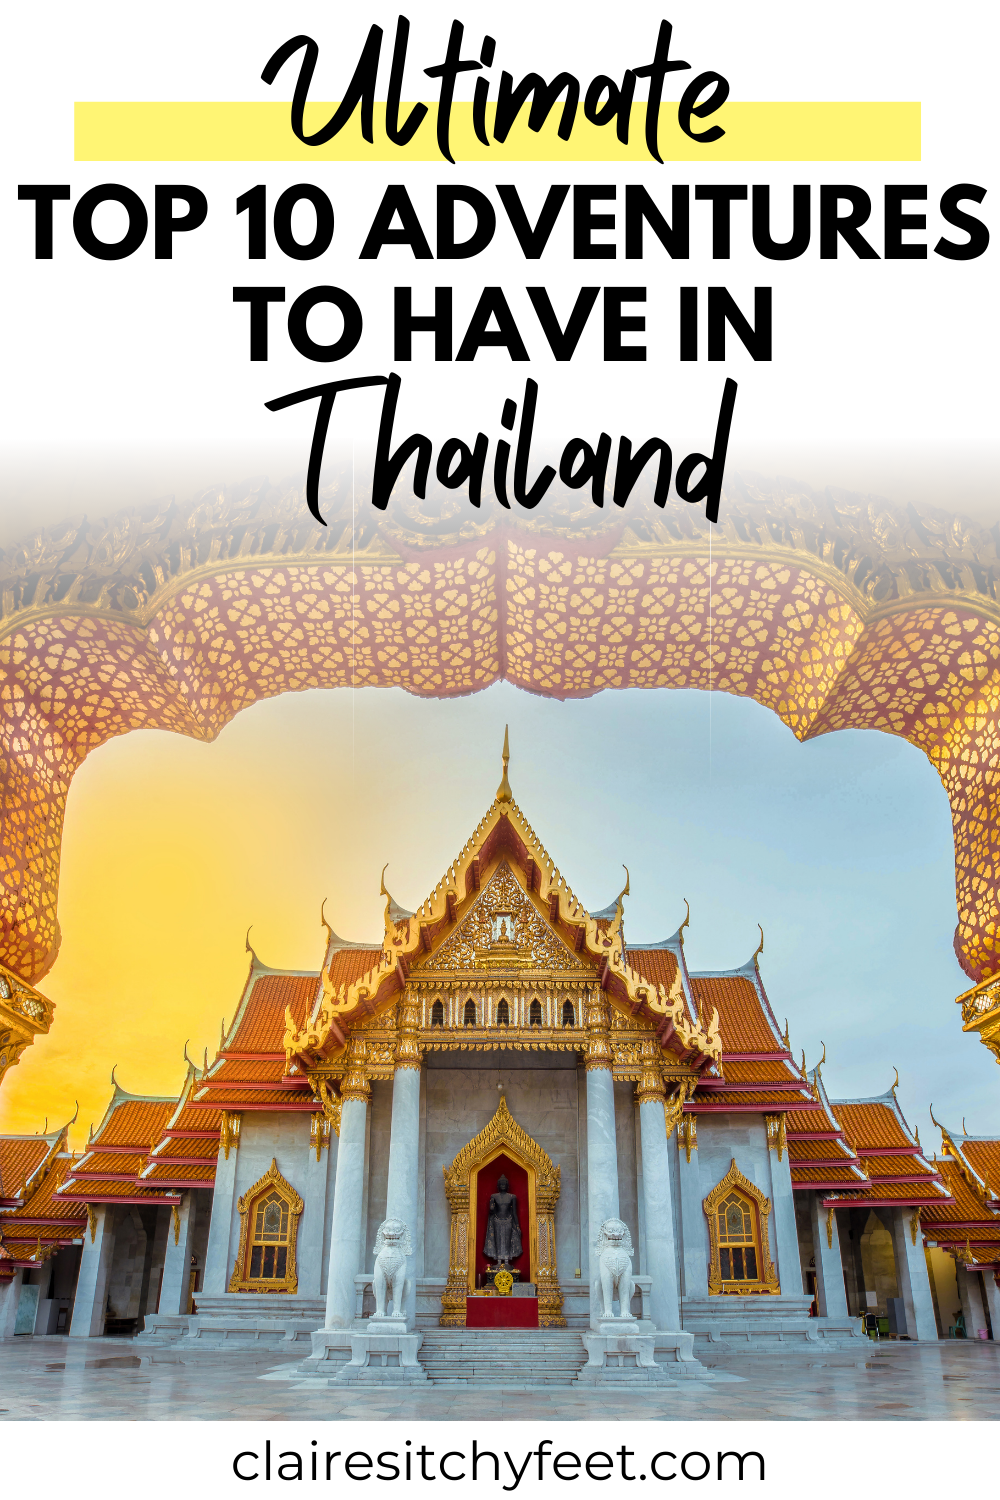 Top 10 Adventures in Thailand